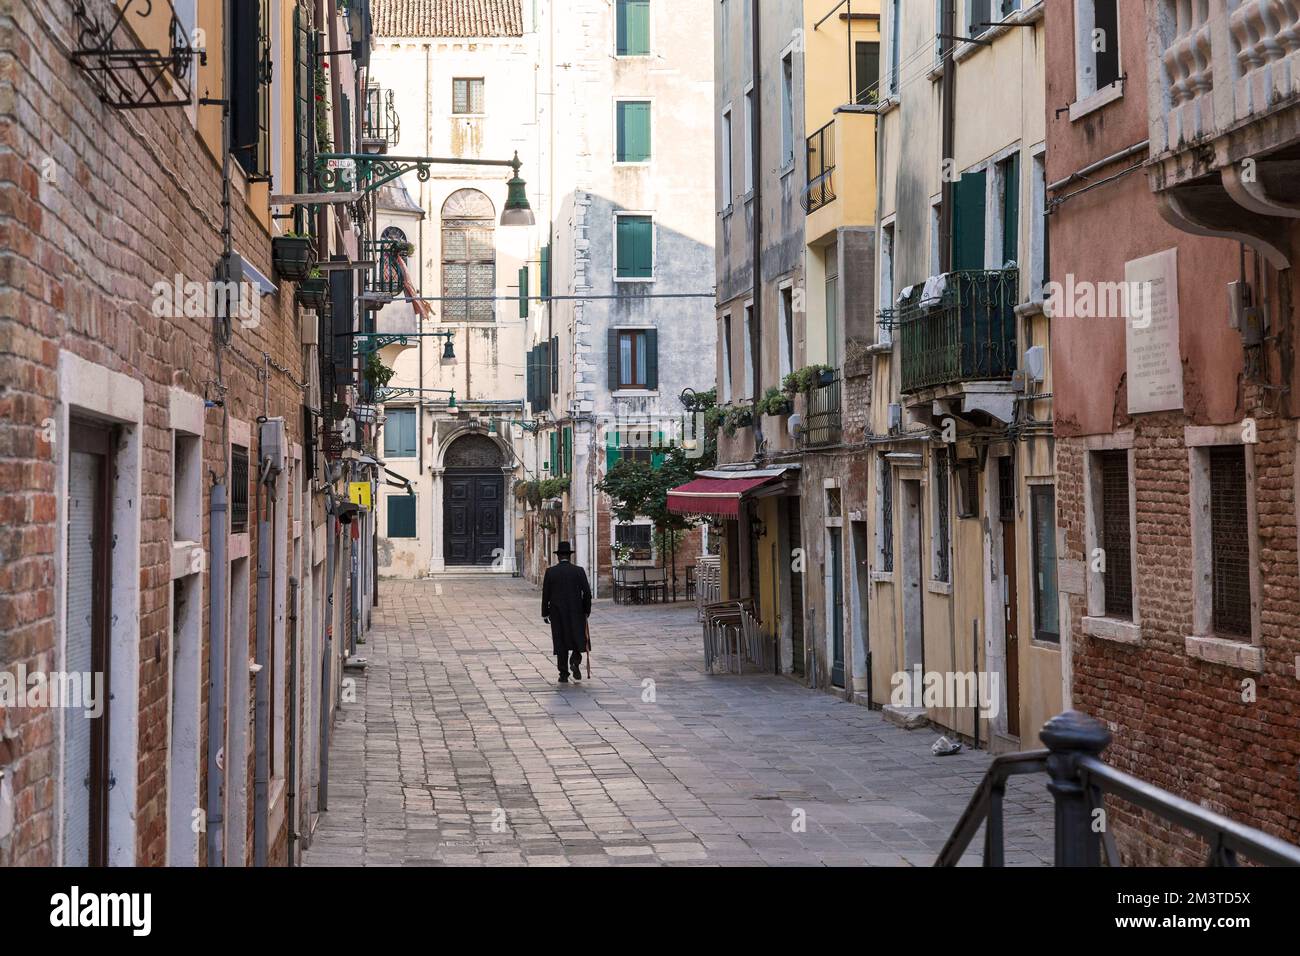 VENISE, ITALIE - 9 SEPTEMBRE 2018 : c'est la région de l'ancien ghetto juif dans le quartier de Cannaregio. Banque D'Images